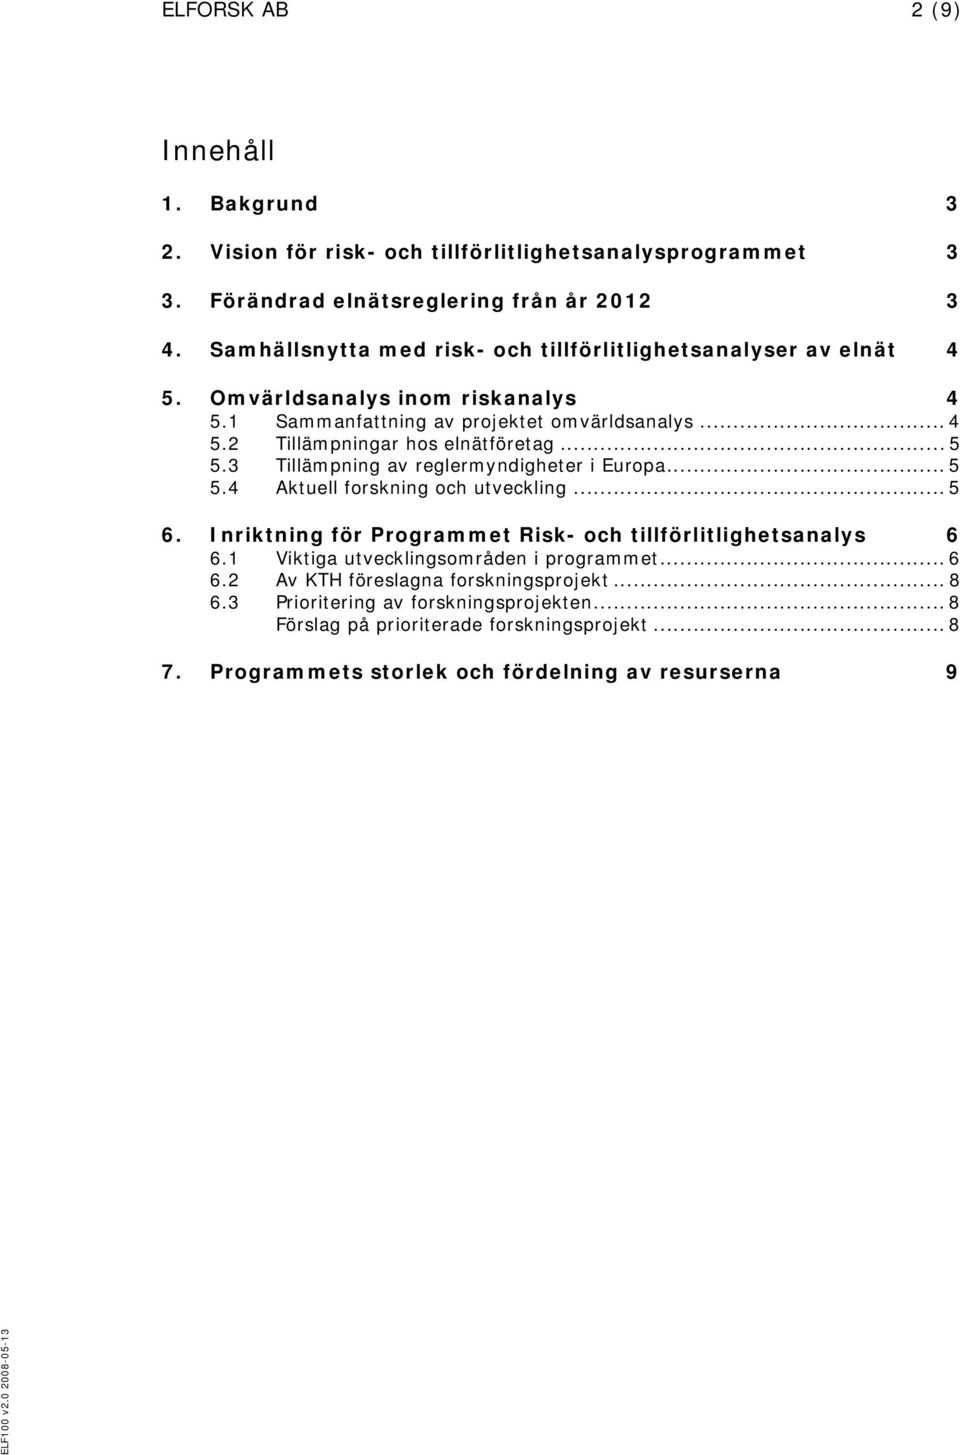 .. 5 5.3 Tillämpning av reglermyndigheter i Europa... 5 5.4 Aktuell forskning och utveckling... 5 6. Inriktning för Programmet Risk- och tillförlitlighetsanalys 6 6.1 6.